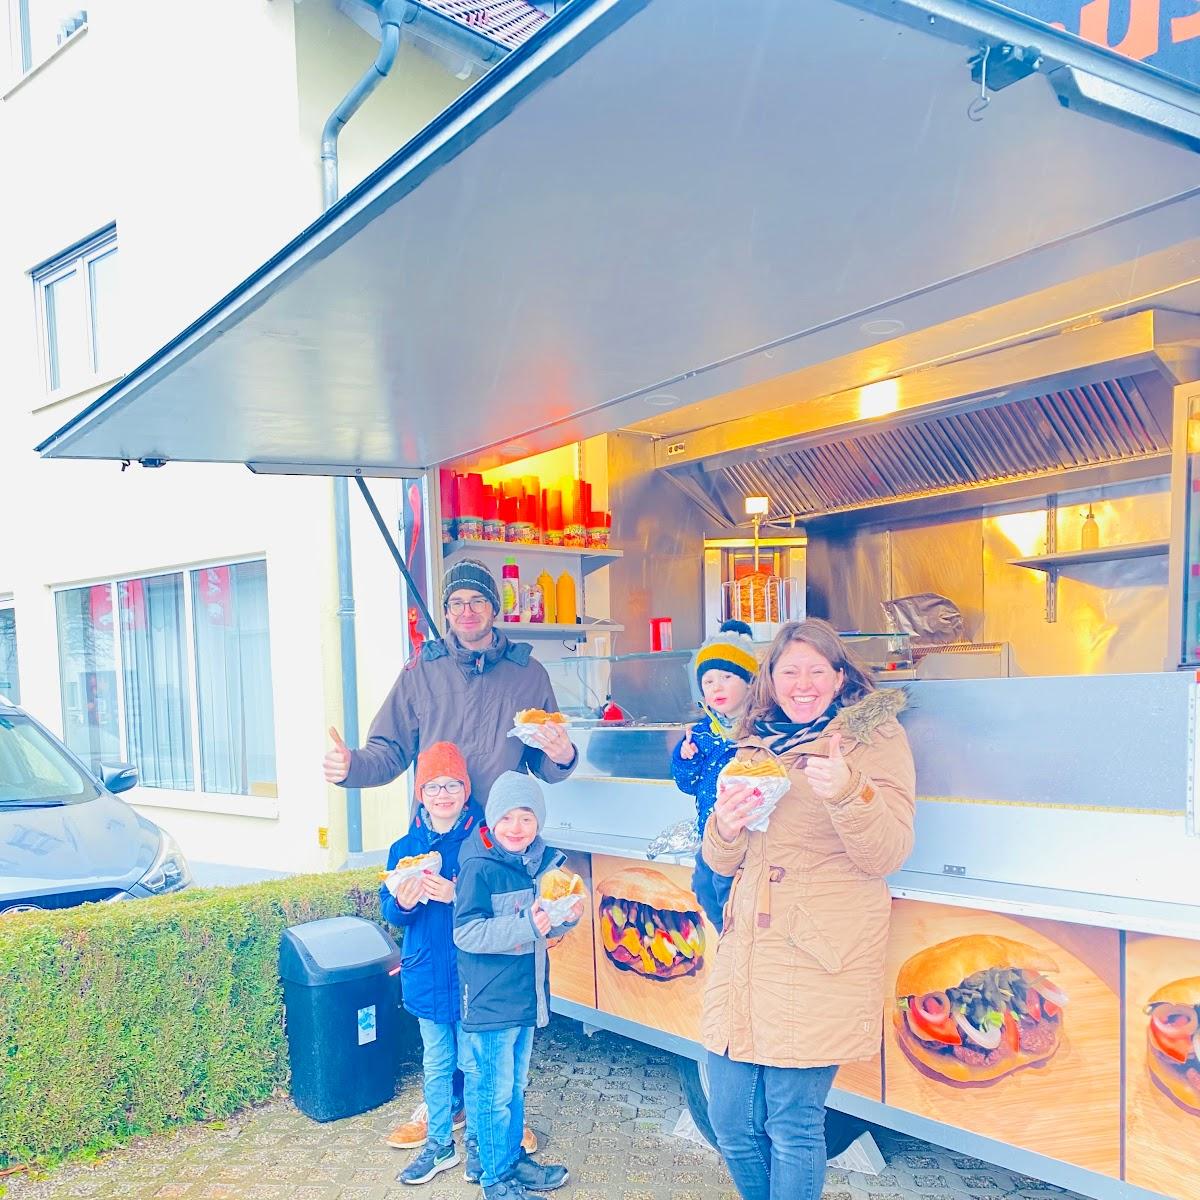 Restaurant "Fero‘s Kebab Haus" in Bad Wurzach